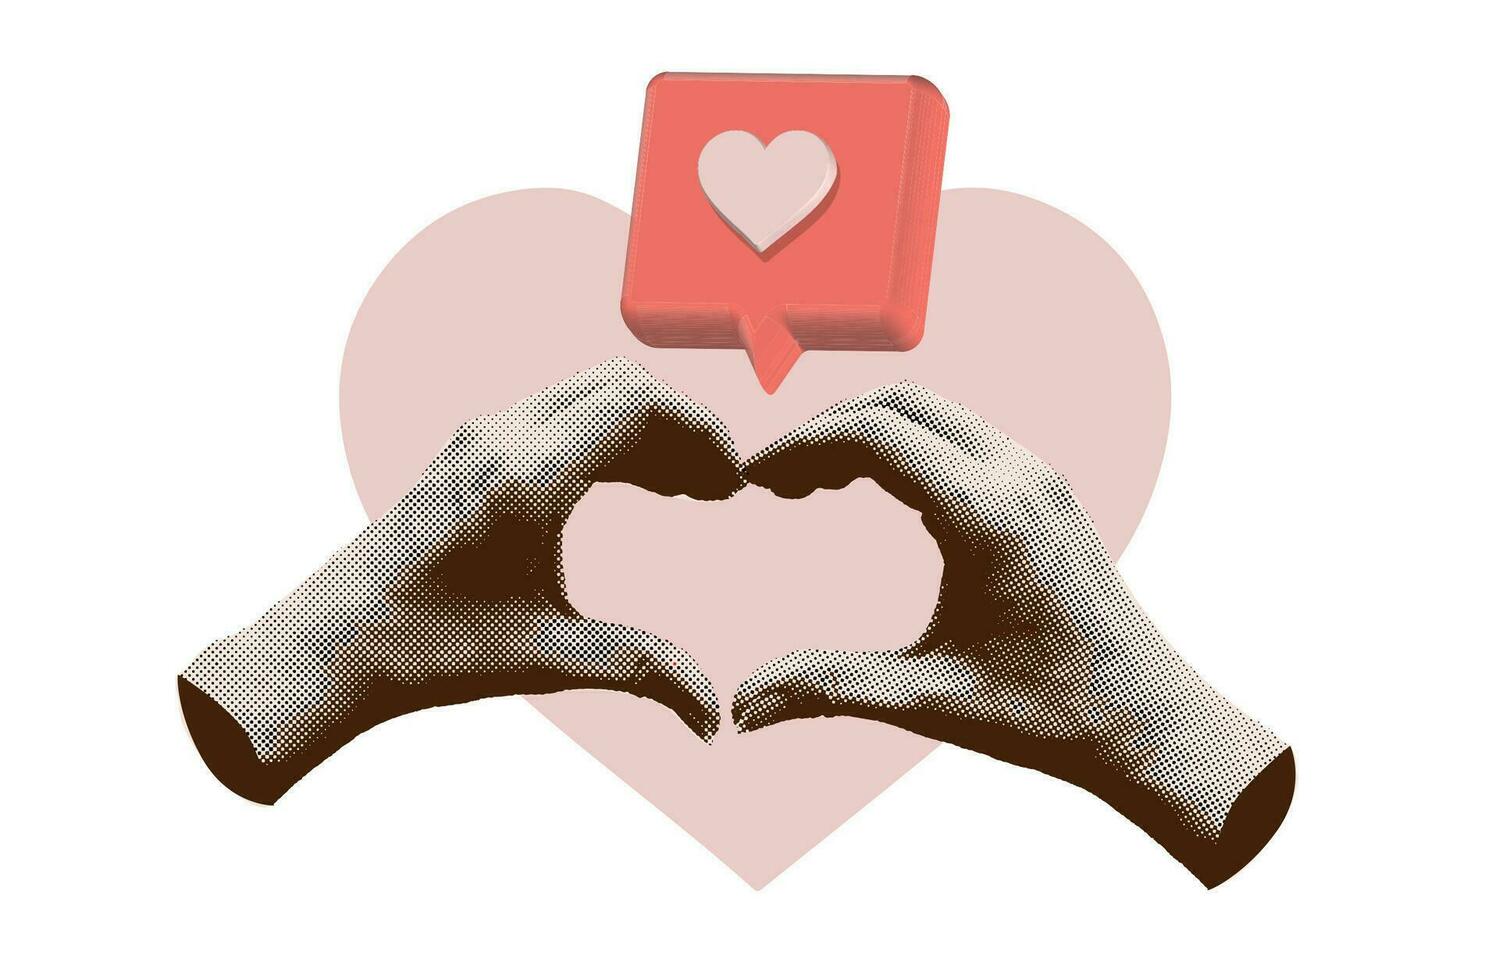 gelukkig Valentijn s dag kaart. handen maken hart vorm met 3d Leuk vinden bericht. hedendaags kunst collage voor Valentijn s dag decoratie. vector illustratie. modern ontwerp met besnoeiing uit halftone armen.